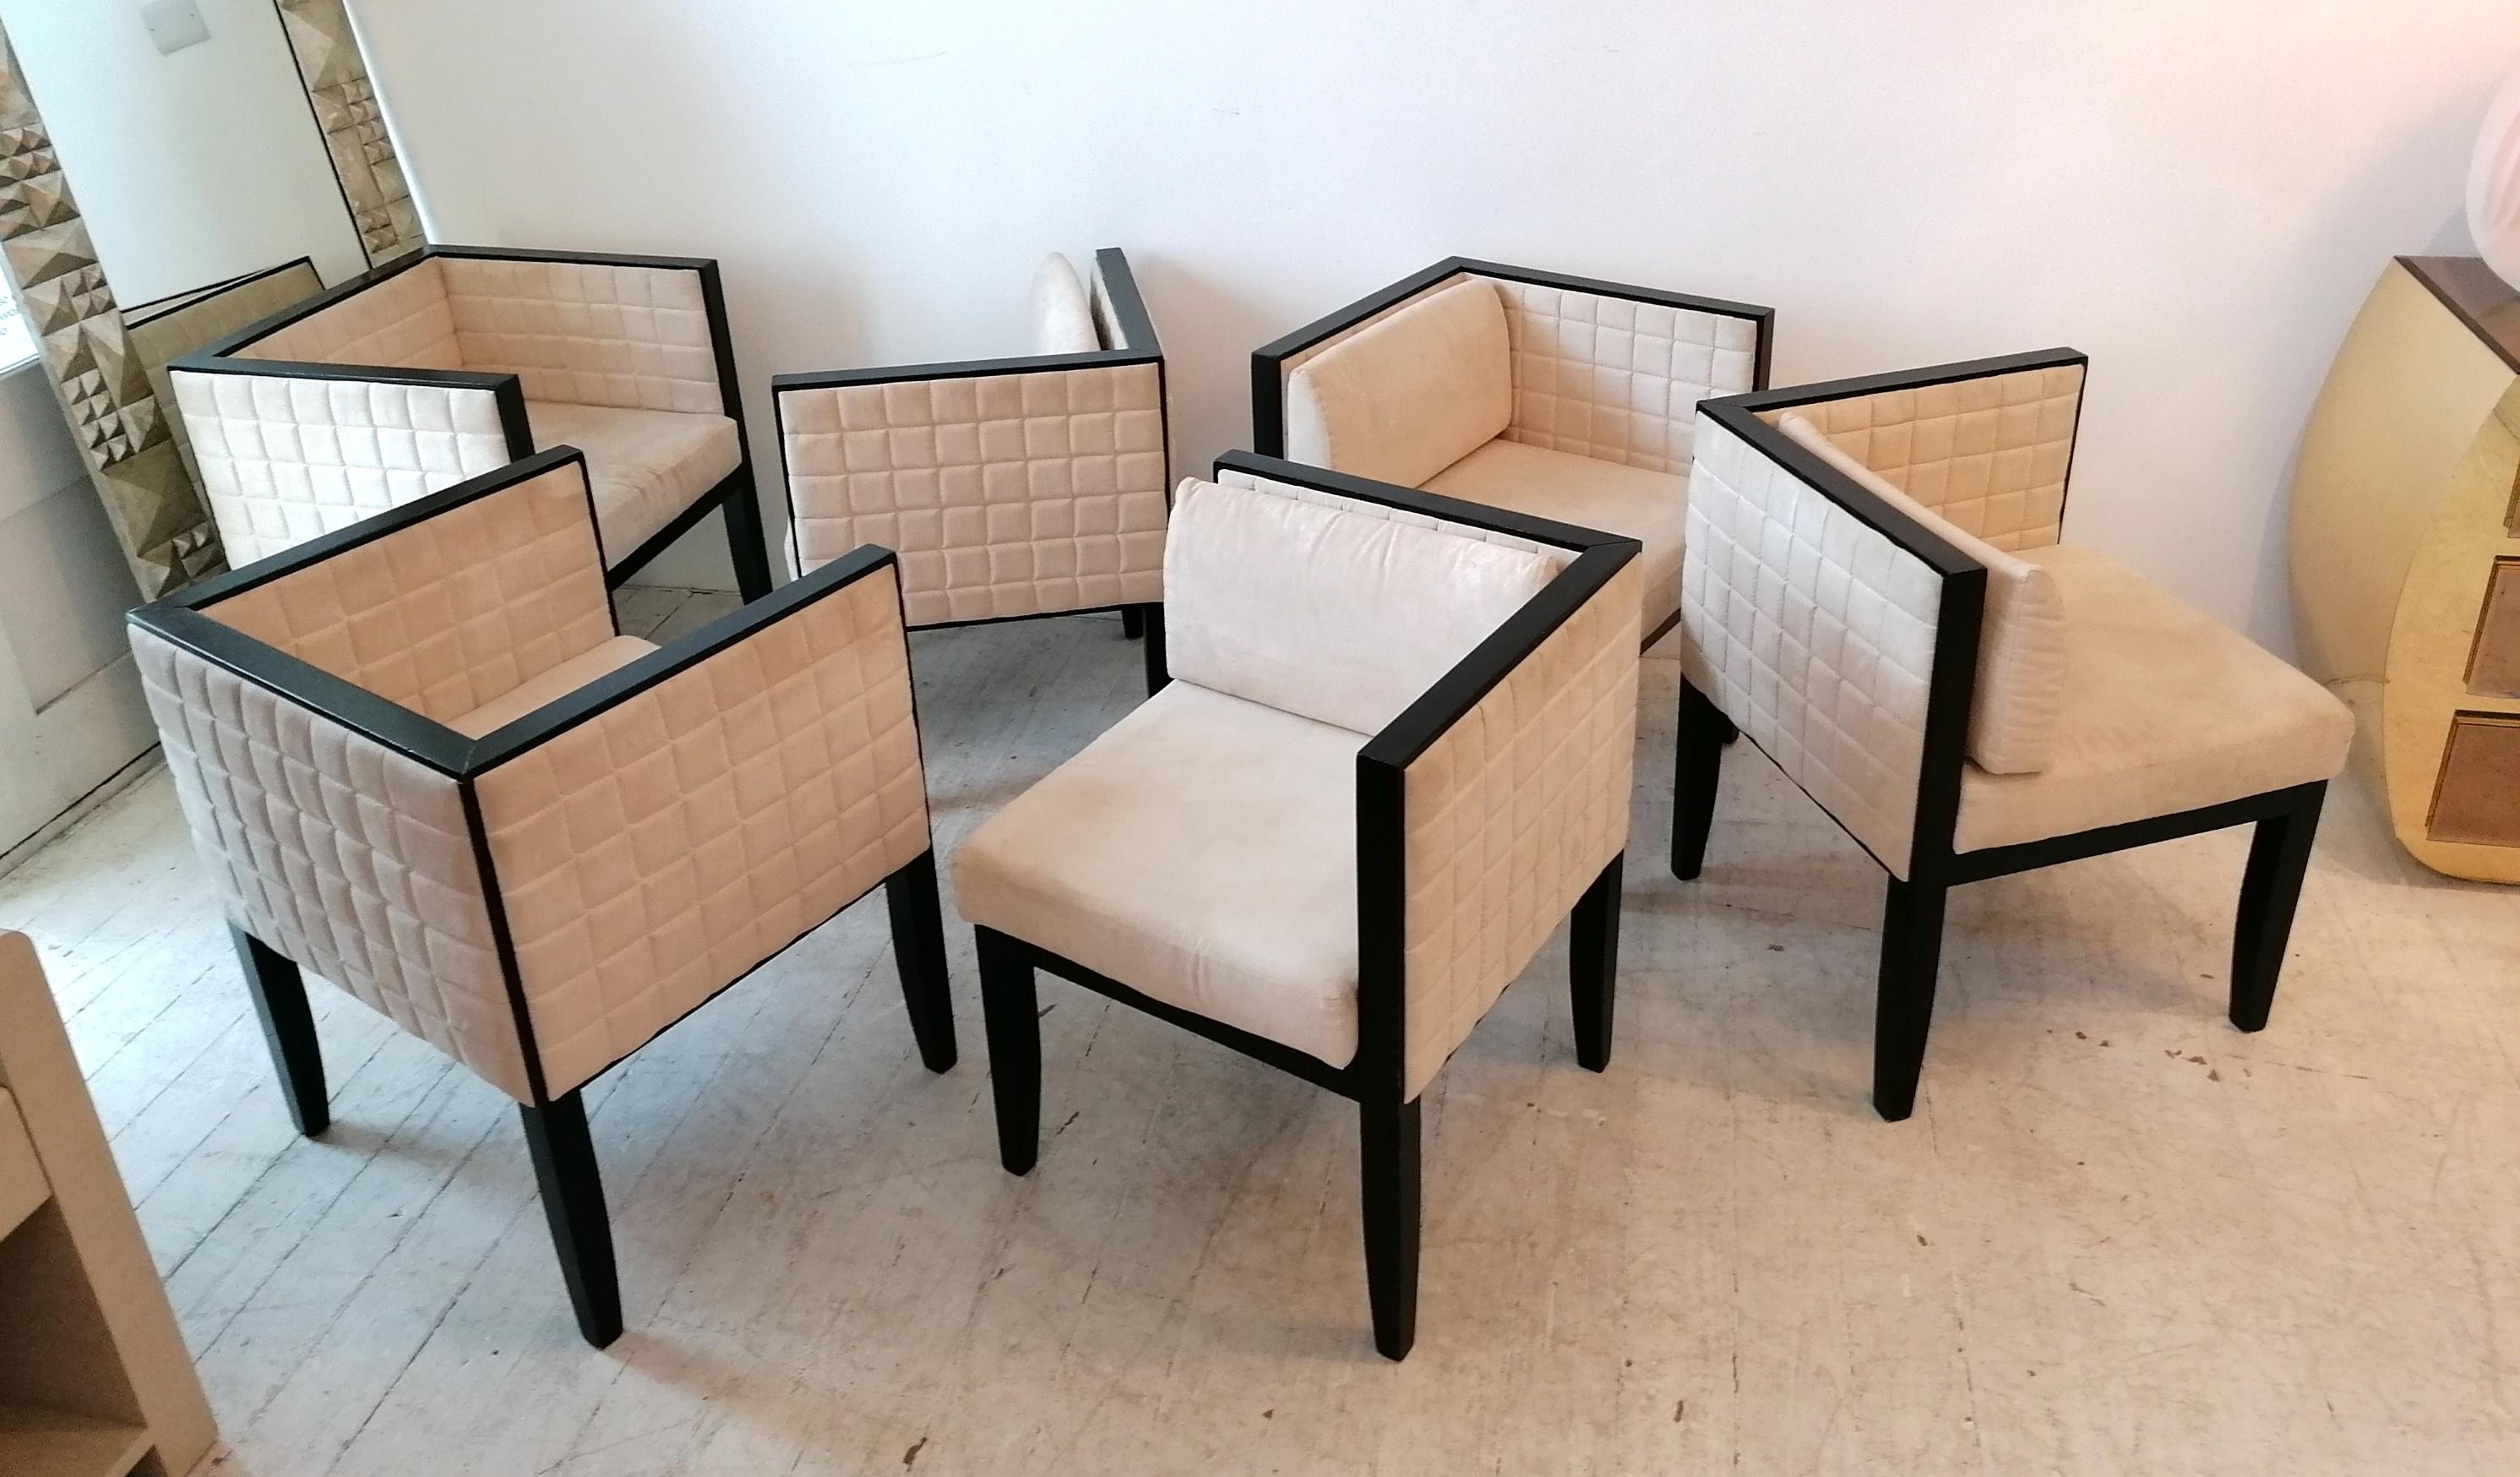 Rare ensemble de 6 chaises Yale par Pietro Costantini, Italie, années 1980/90. Revêtement en ultrasuède ivoire matelassé, cadres laqués noirs. L'ensemble comprend 2 fauteuils et 4 chaises d'angle (avec coussins de dossier amovibles).
Un style très